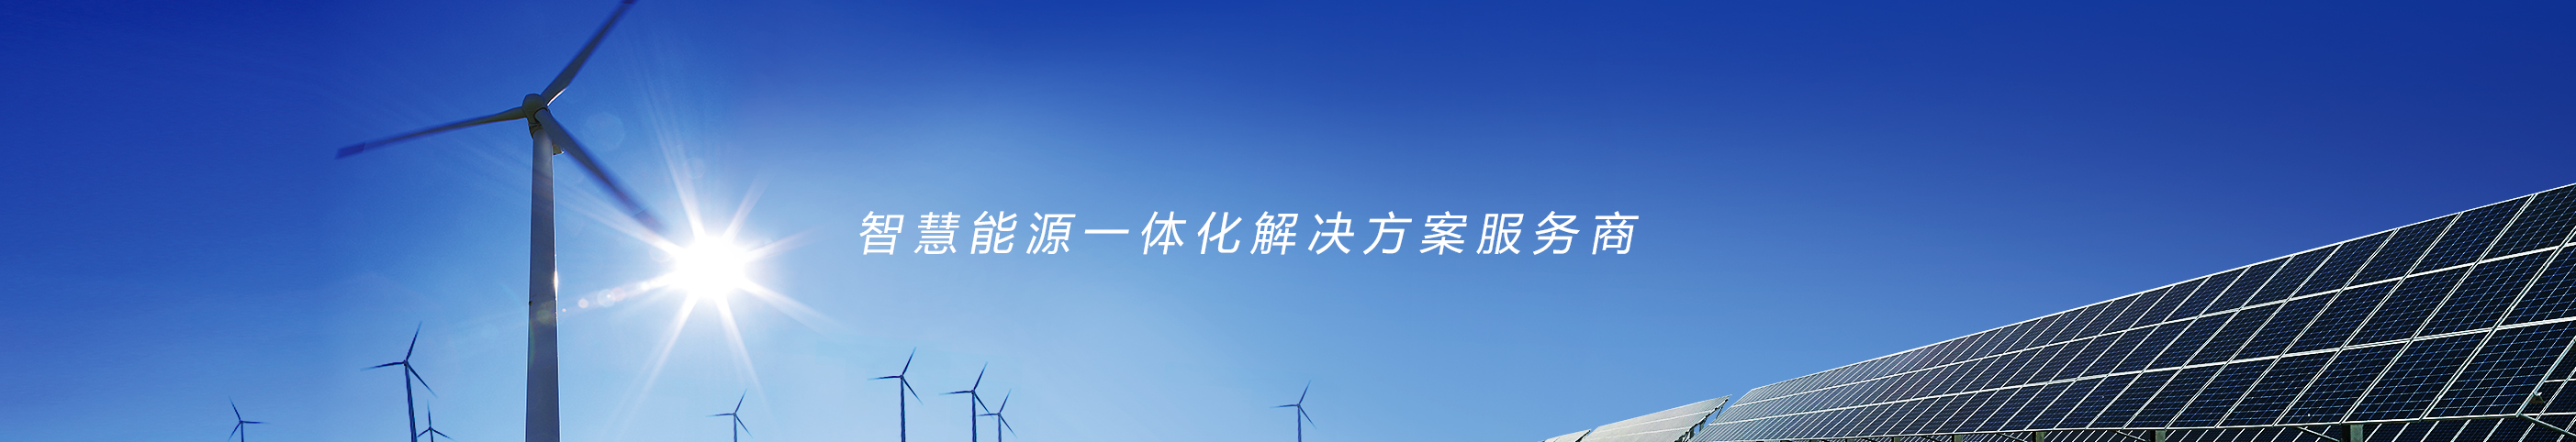 江蘇磐石新能源開發有限公司